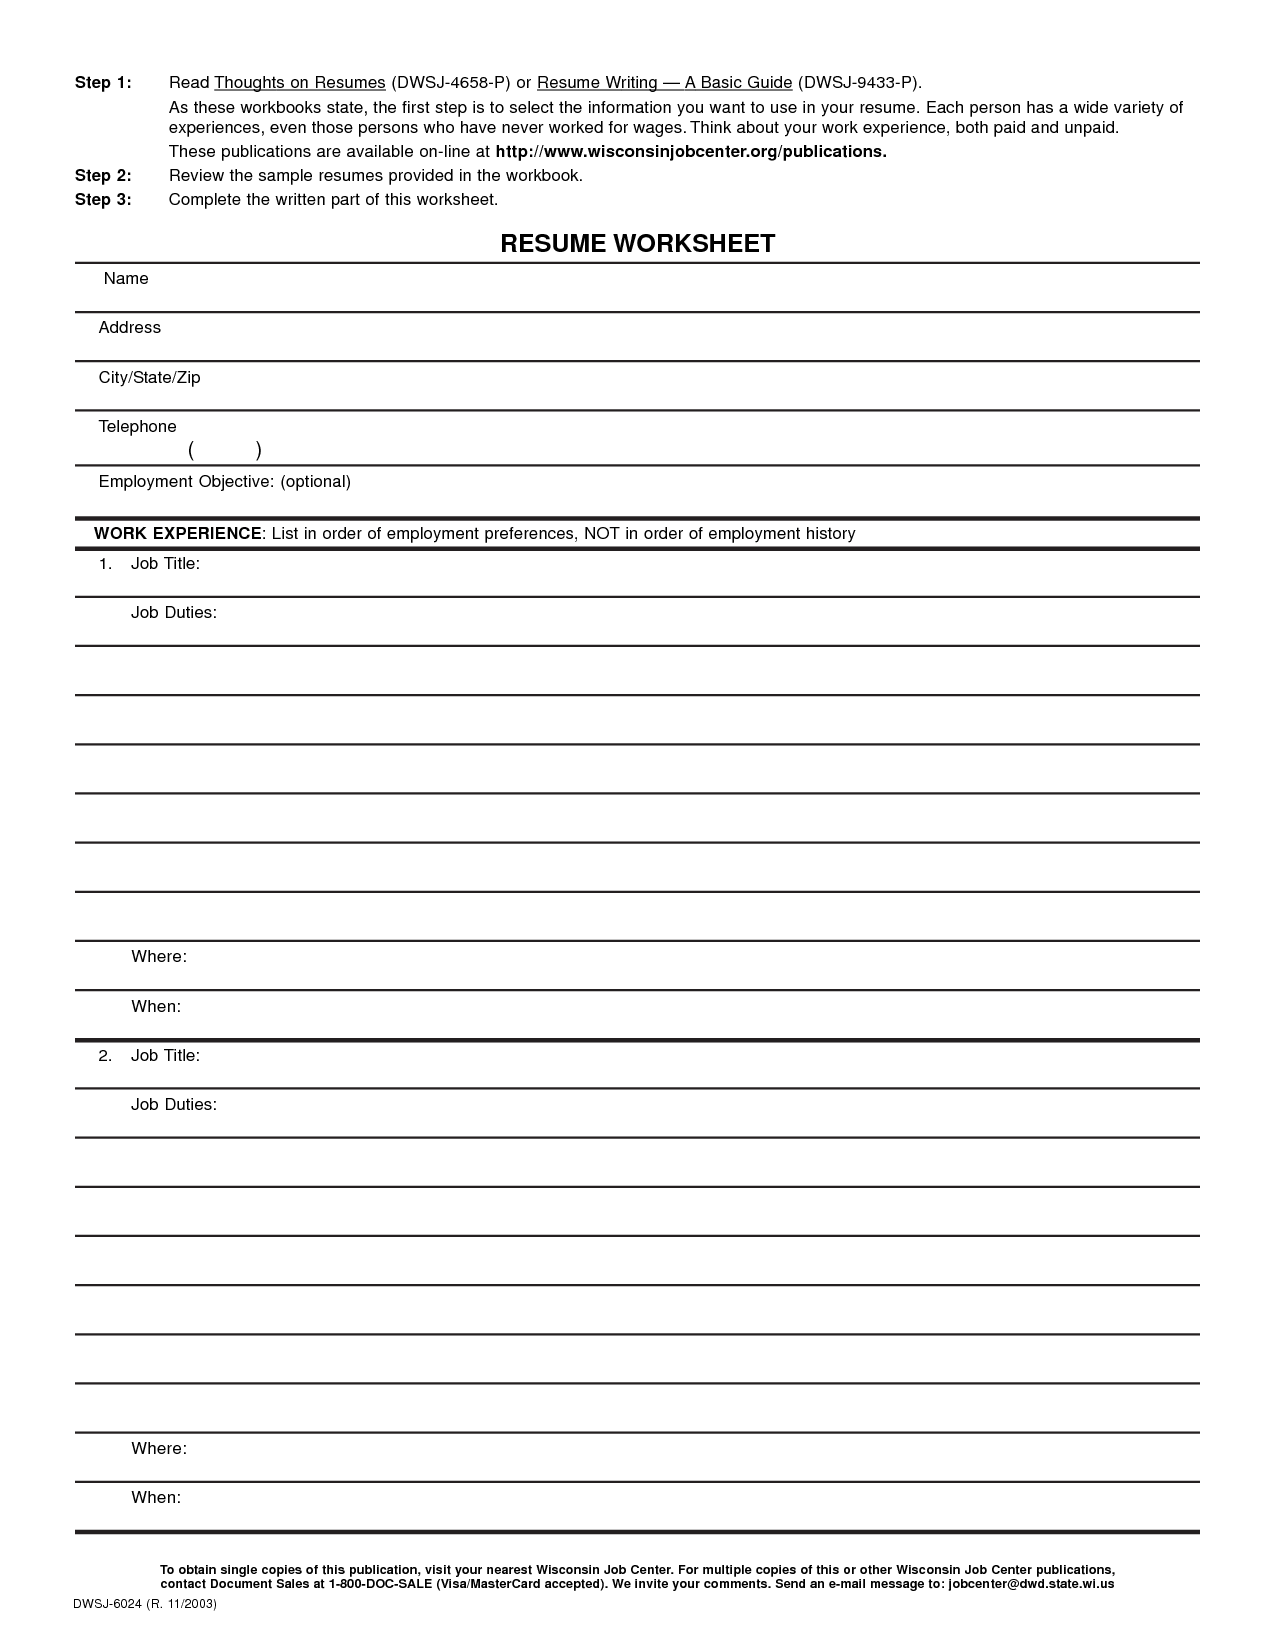 free worksheet templates